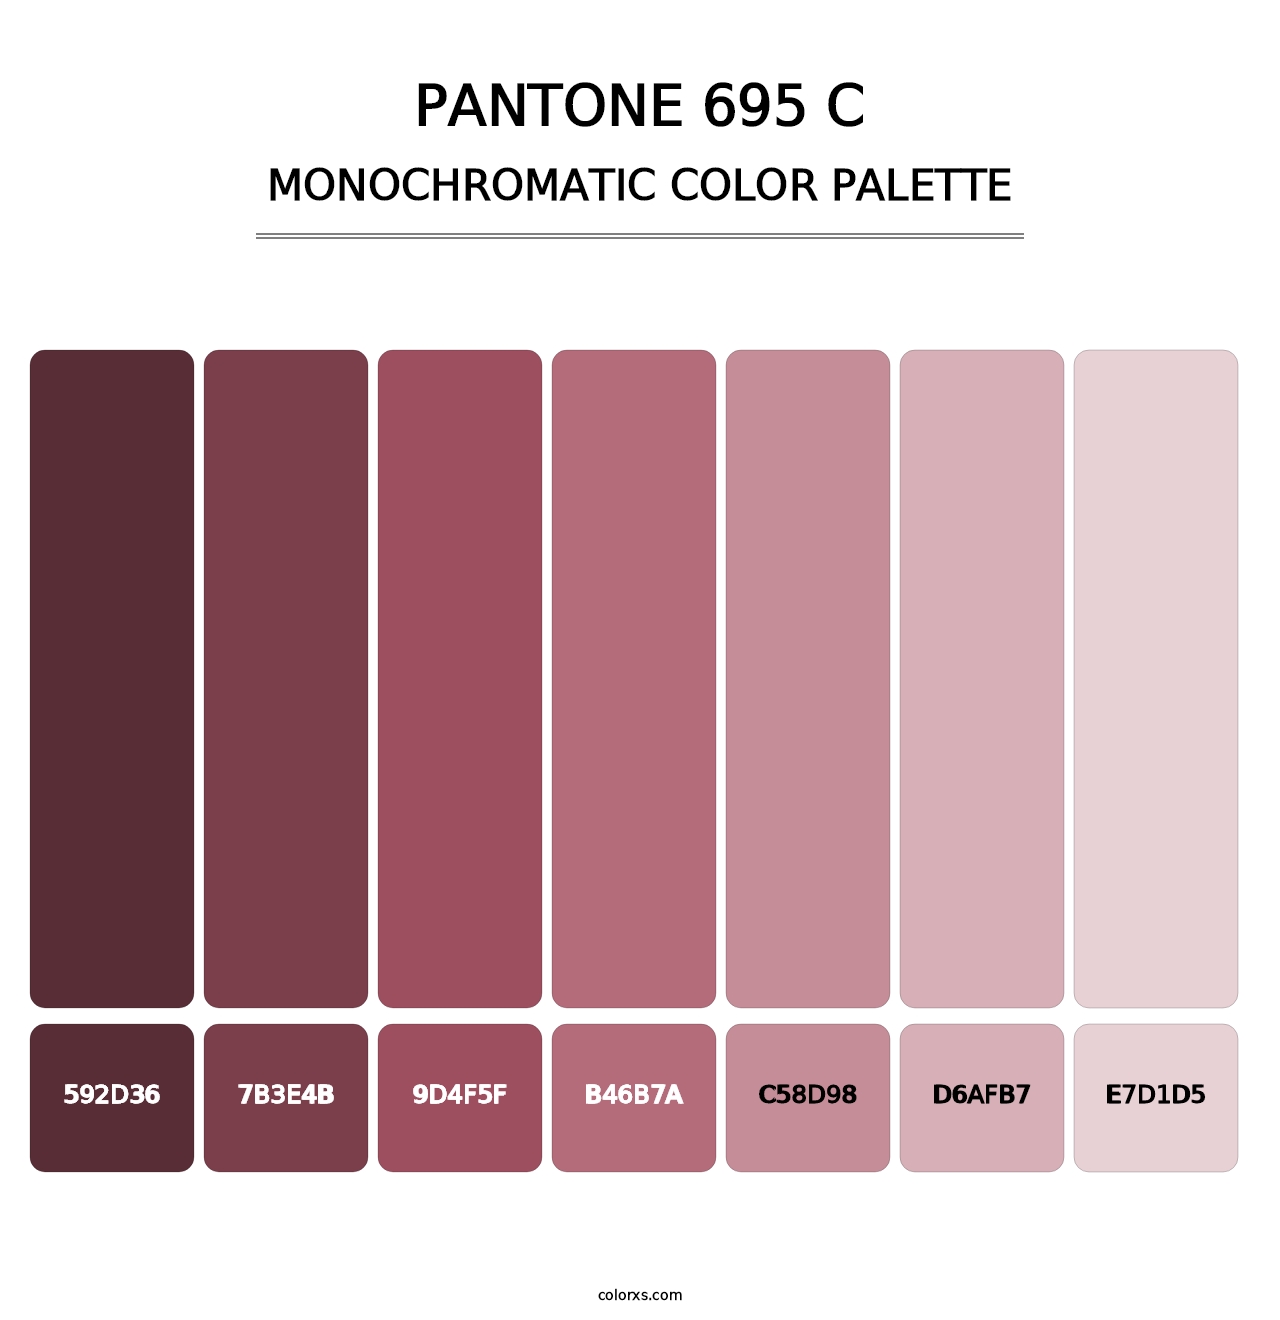 PANTONE 695 C - Monochromatic Color Palette